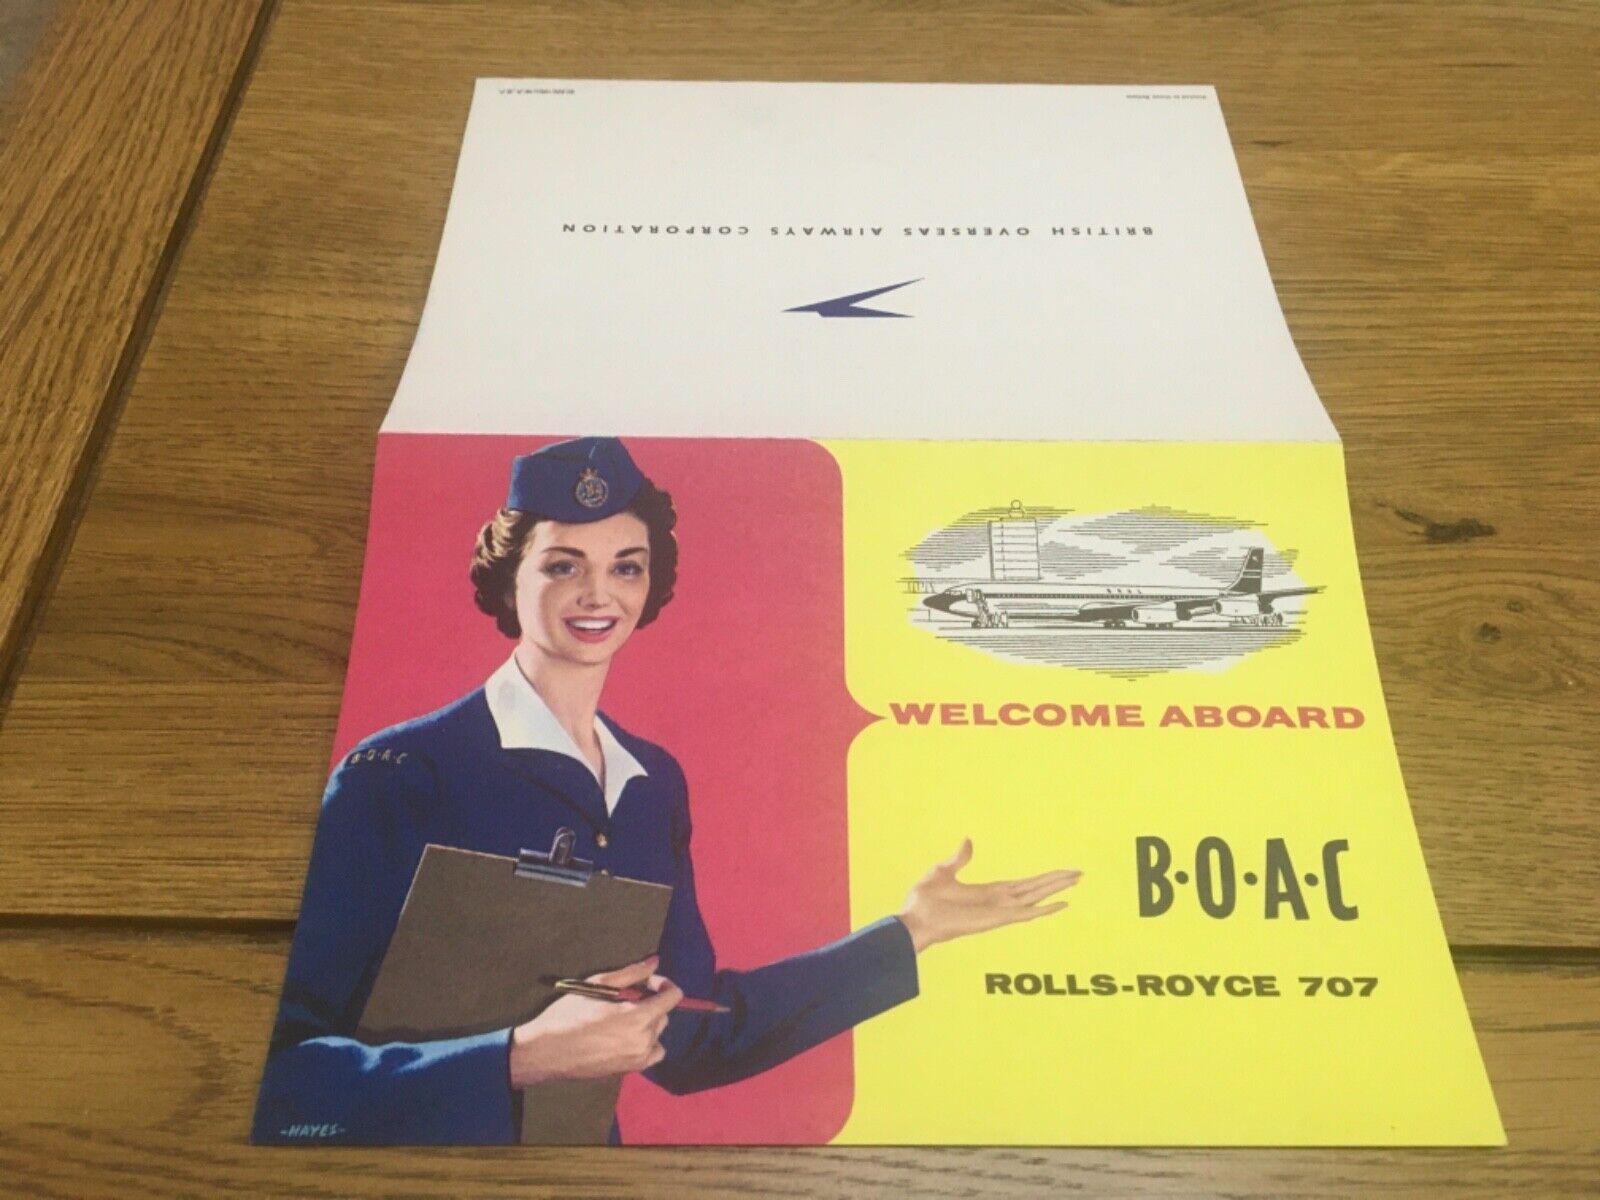 BOAC. WELCOME ABOARD BOAC ROLLS-ROYCE 707, MULTI LINGUAL PAMPHLET. 1960.